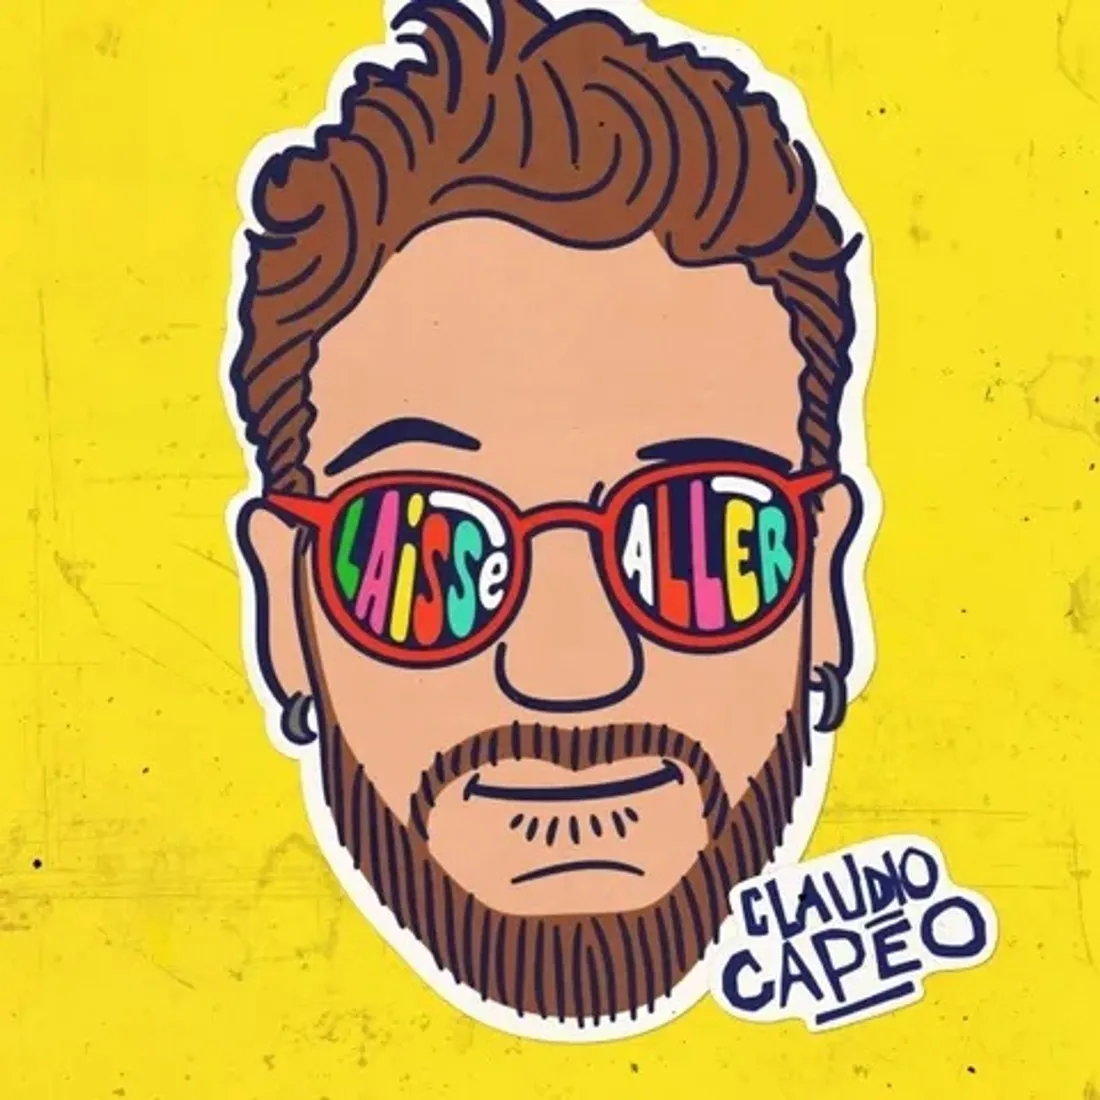 Le nouveau single de Claudio Capéo